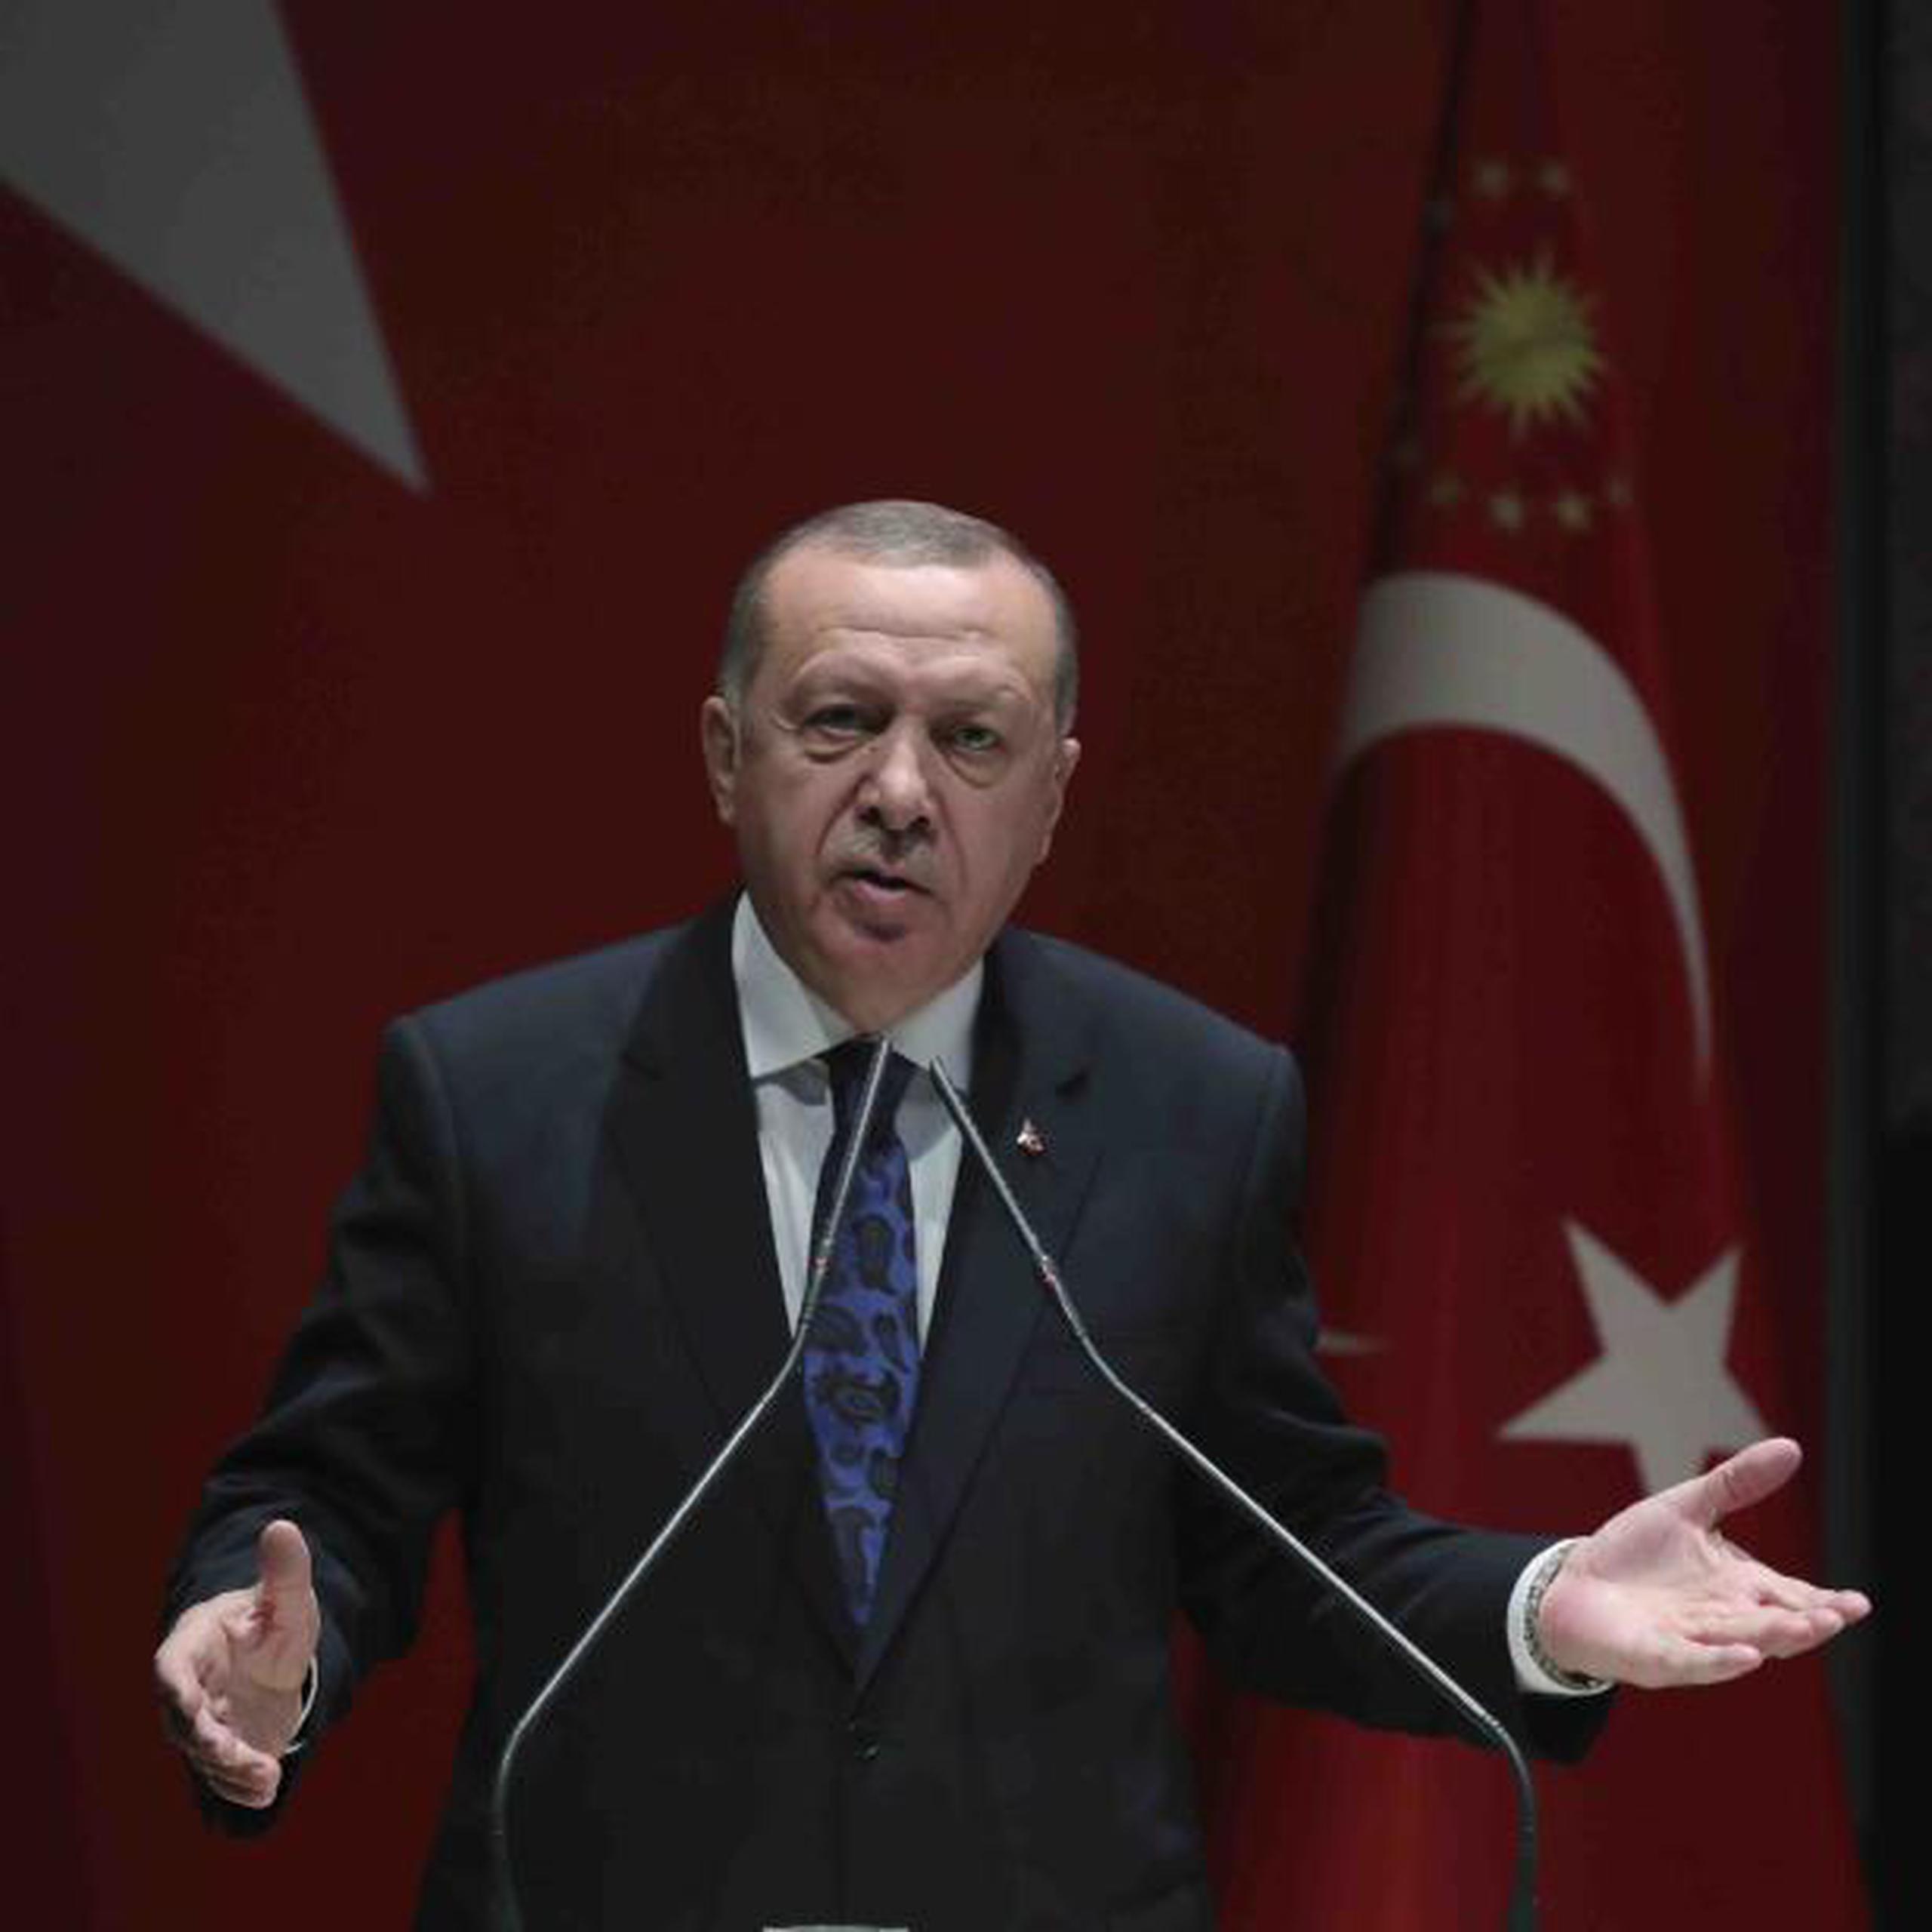 El periódico Sozcu ha criticado fuertemente al gobierno del presidente Recep Tayyip Erdogan (en la foto), pero los periodistas rechazaron las acusaciones y se espera que apelen los veredictos. (AP)